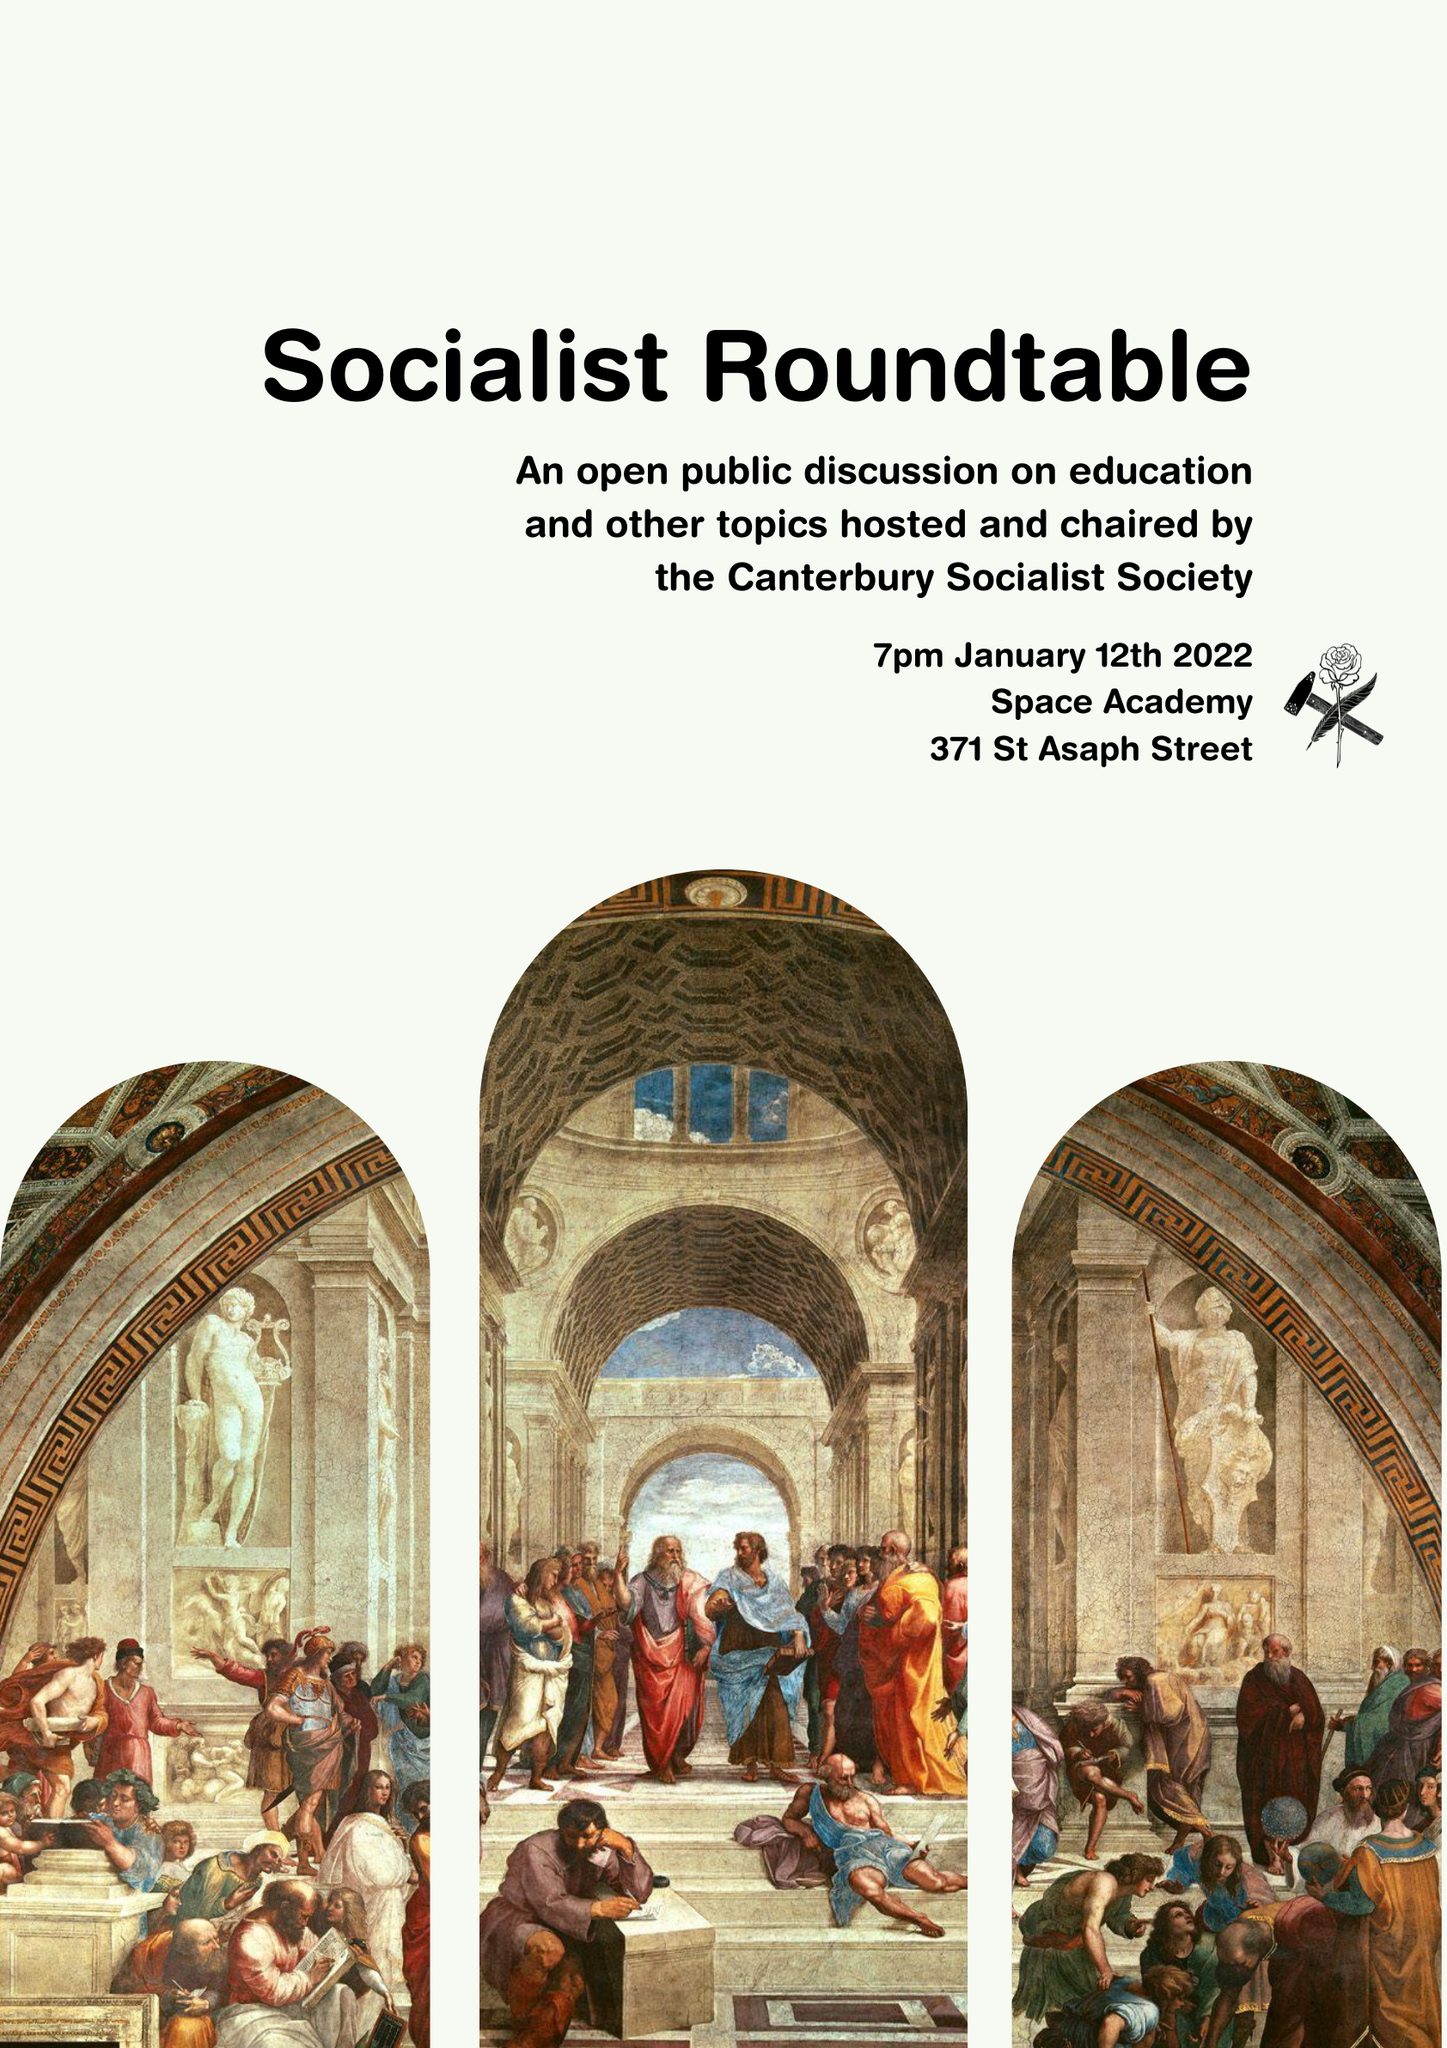 CSS Public Discussion: Socialist Roundtable (Education)